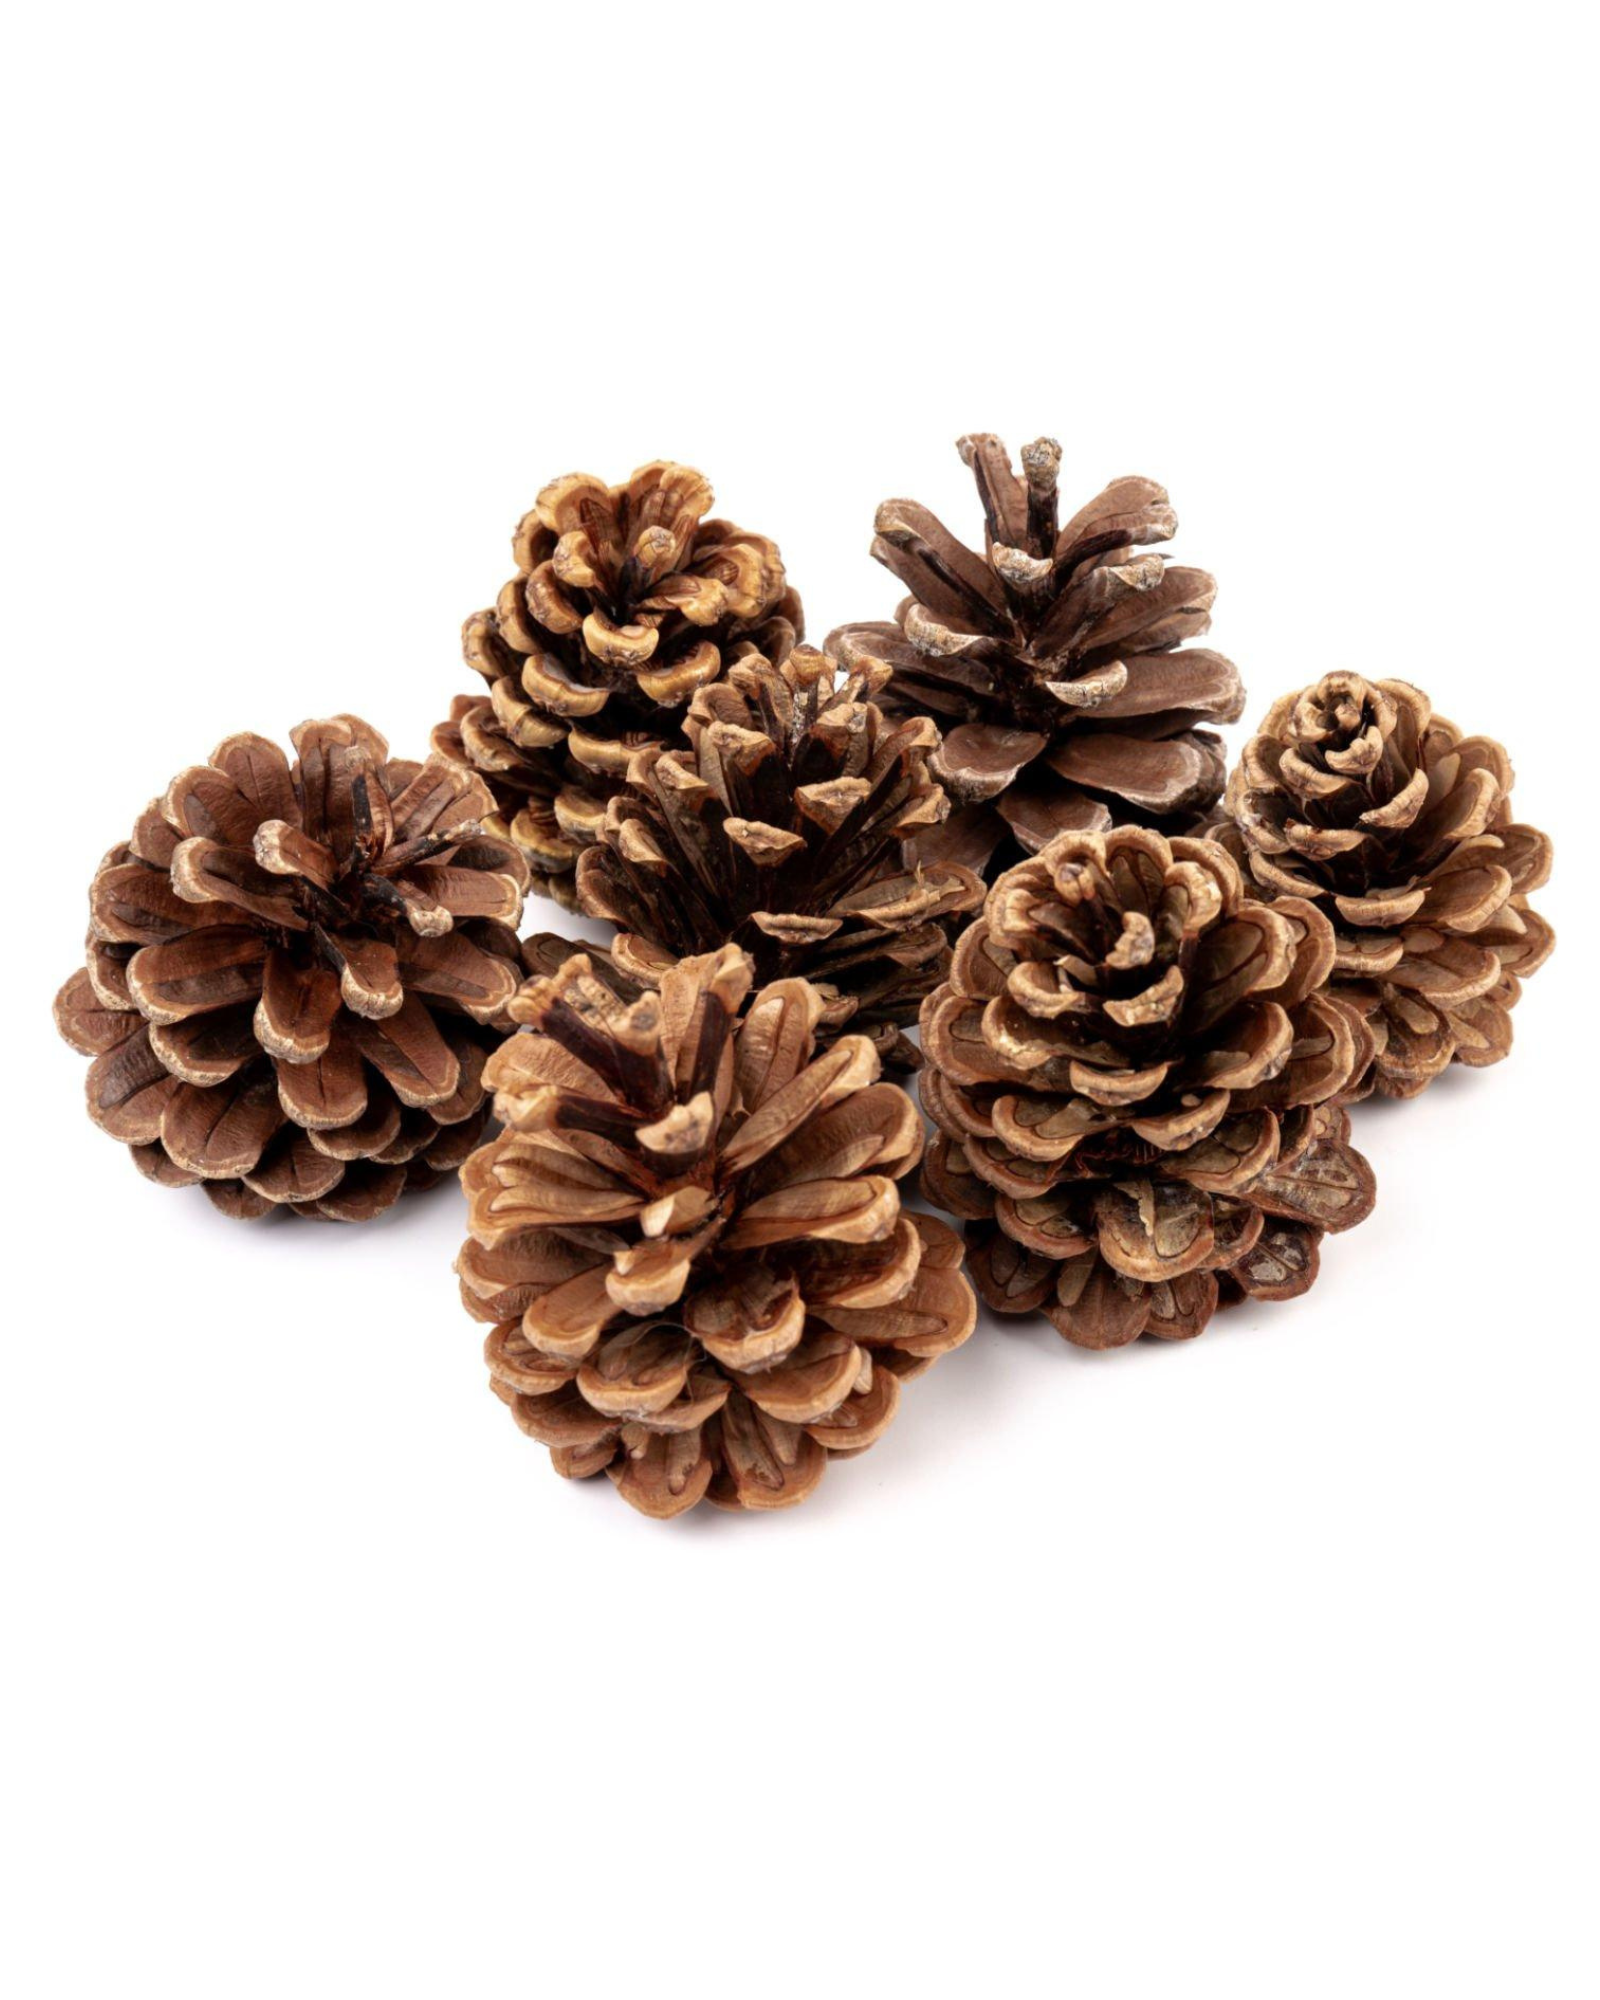 Decorative Pine Cone for Christmas Decor & DIY